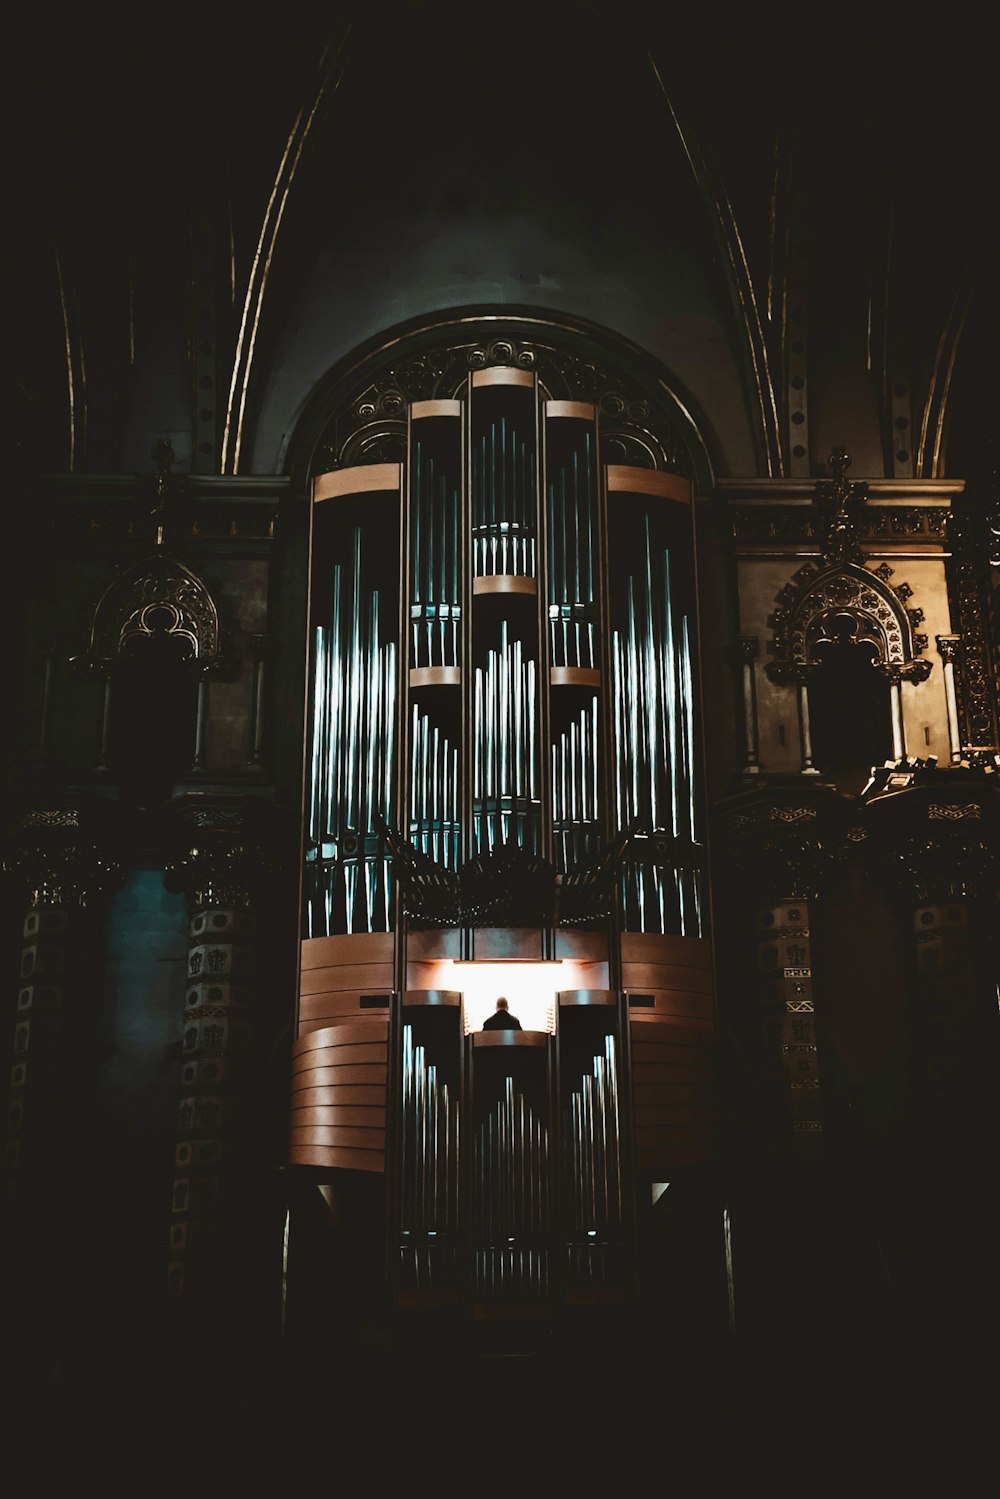 un organo a canne in una chiesa con una croce su di esso